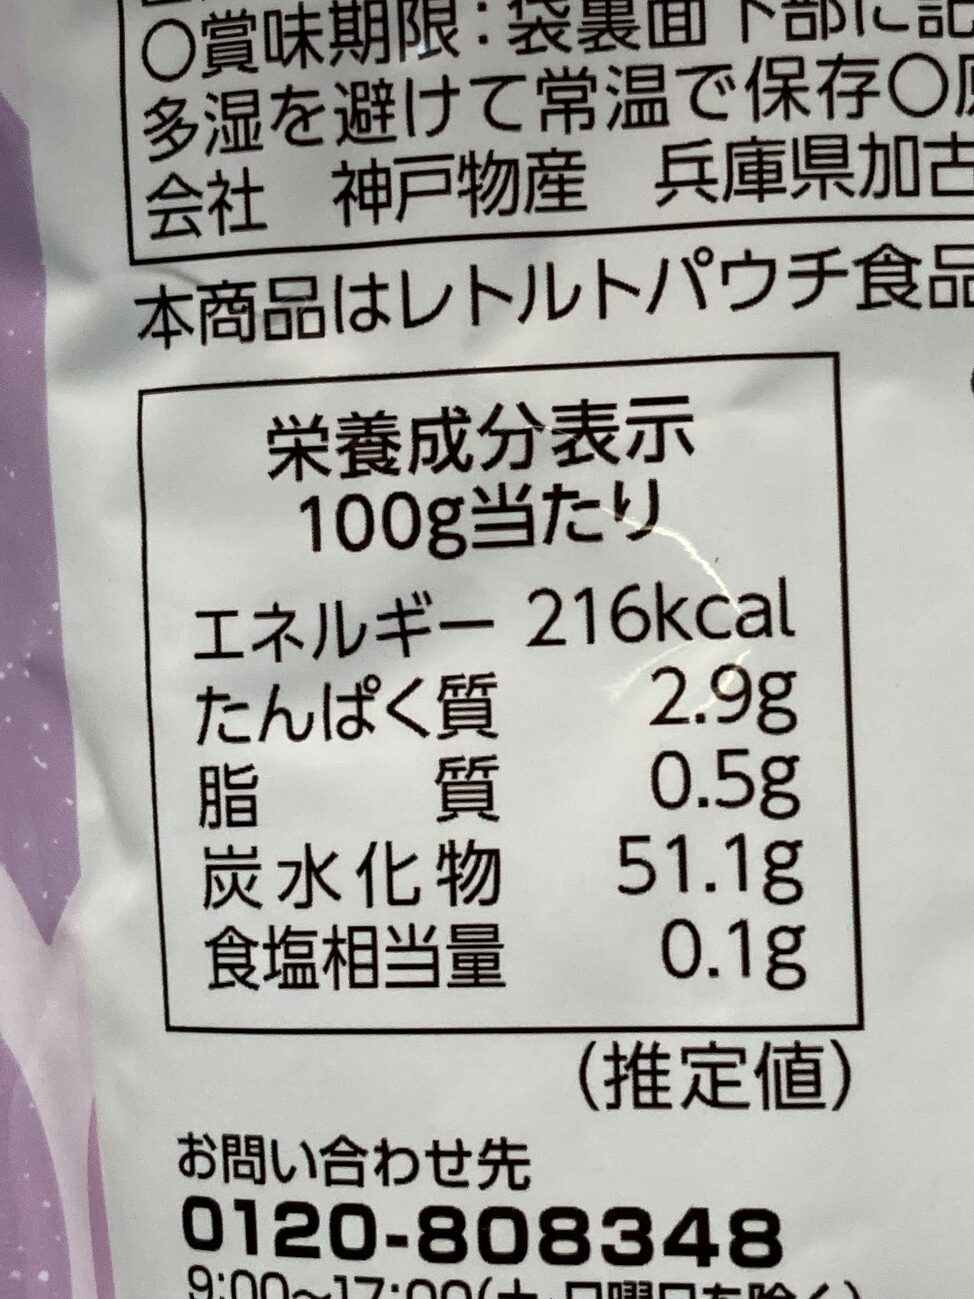 業務スーパーの「紫芋で作ったスイートポテト」の栄養成分表示